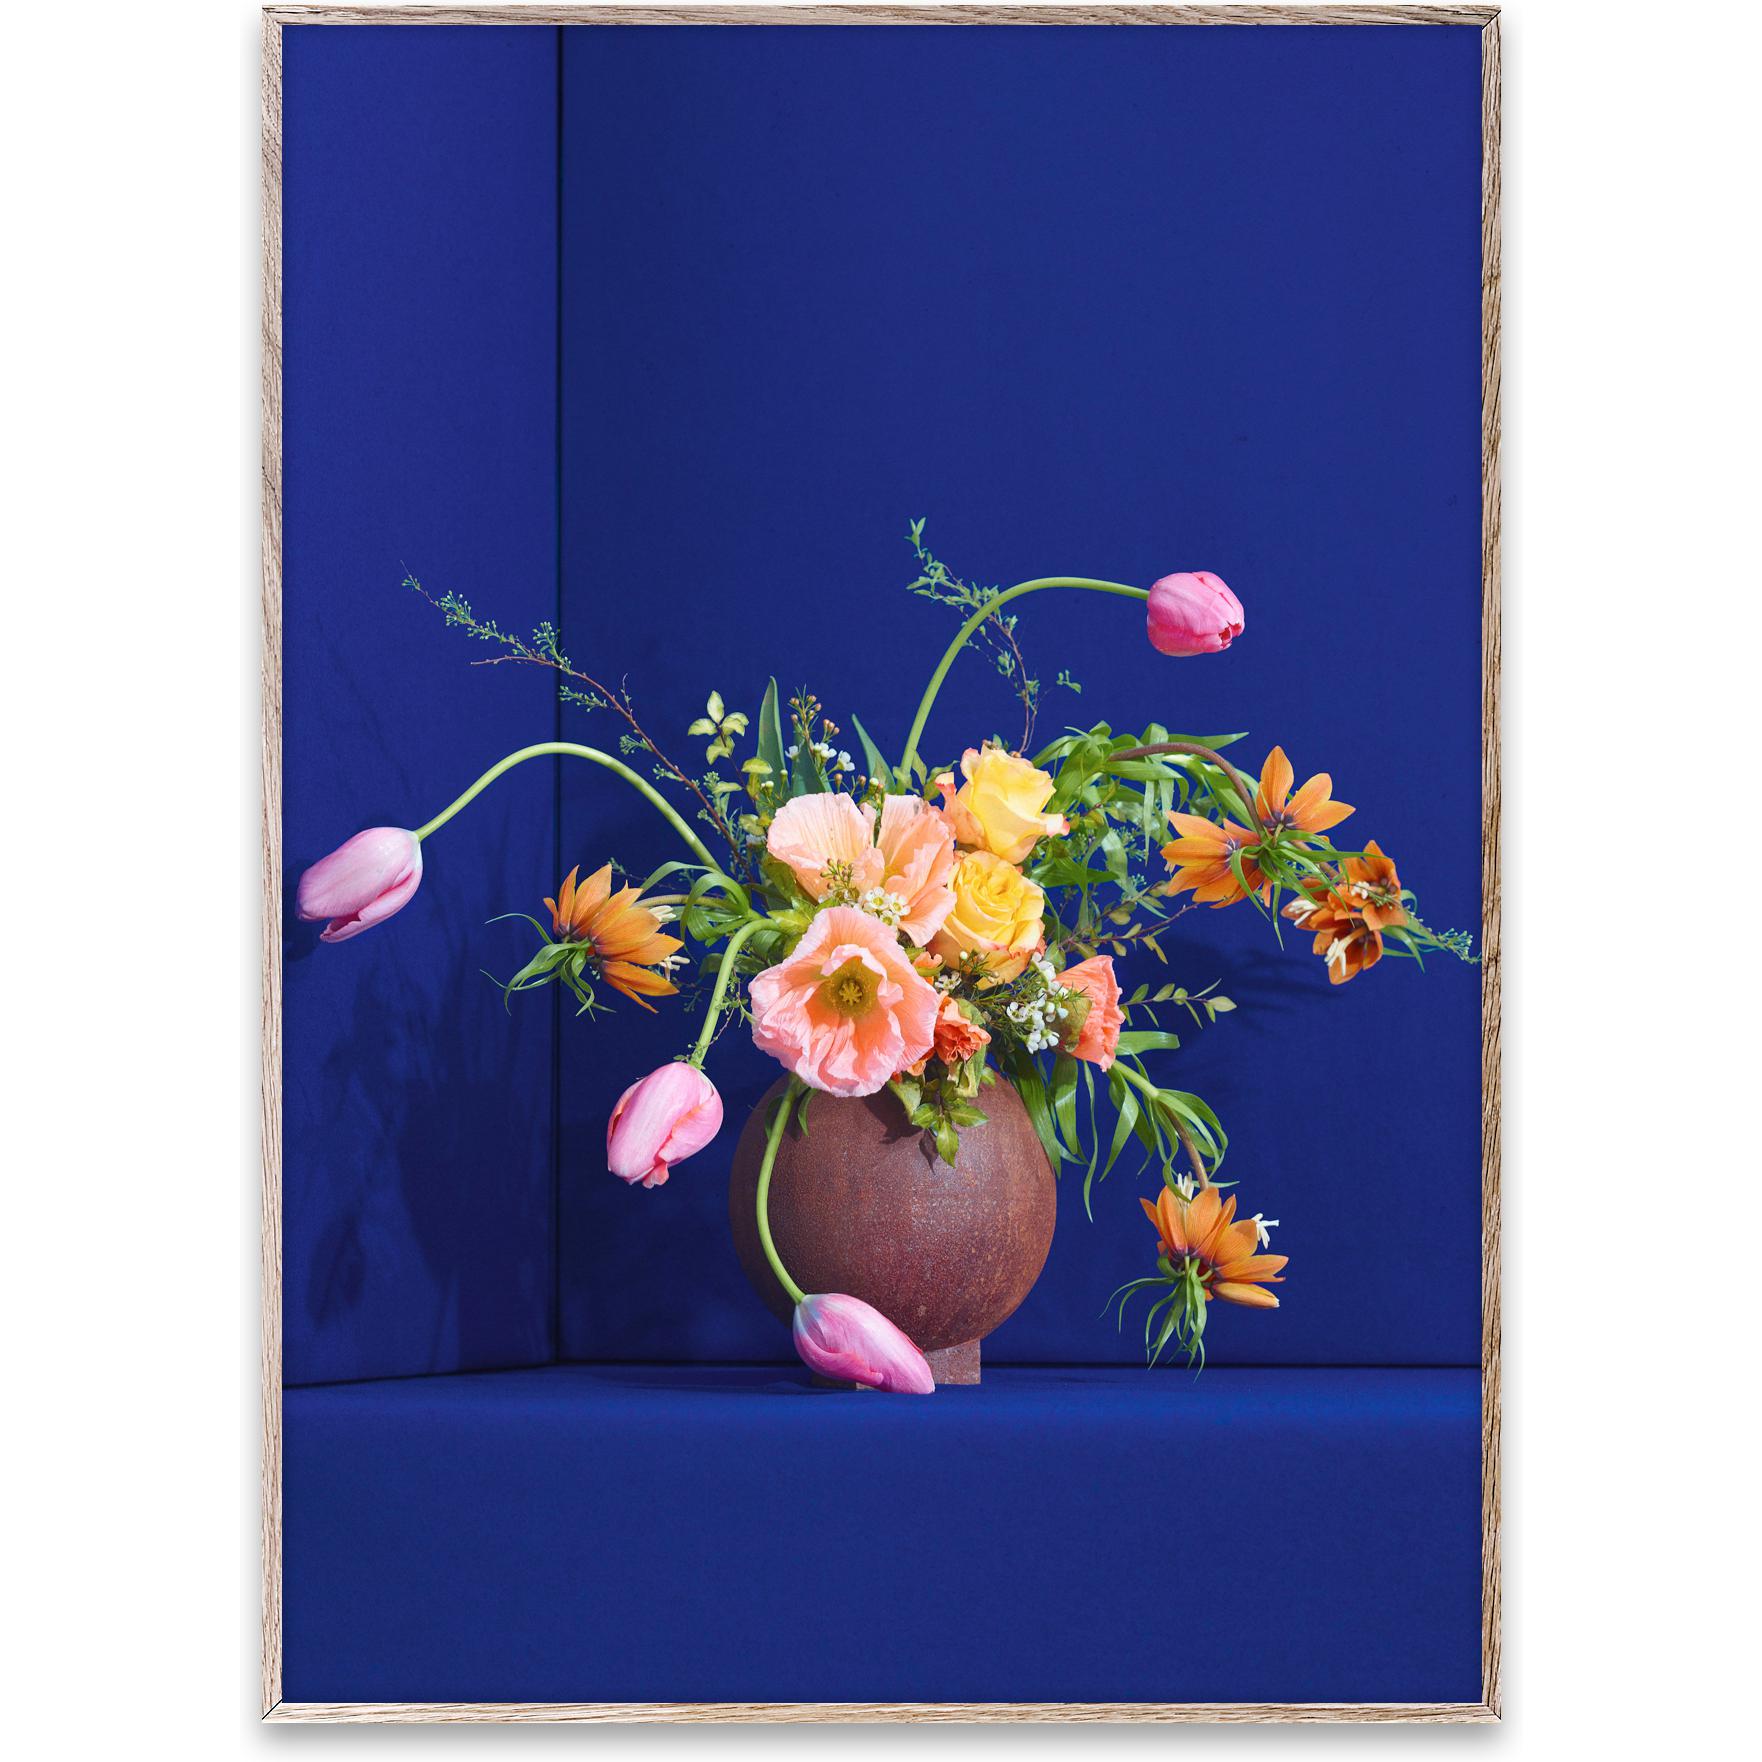 Paper Collective Blomst 01 Affiche 70x100 cm, bleu